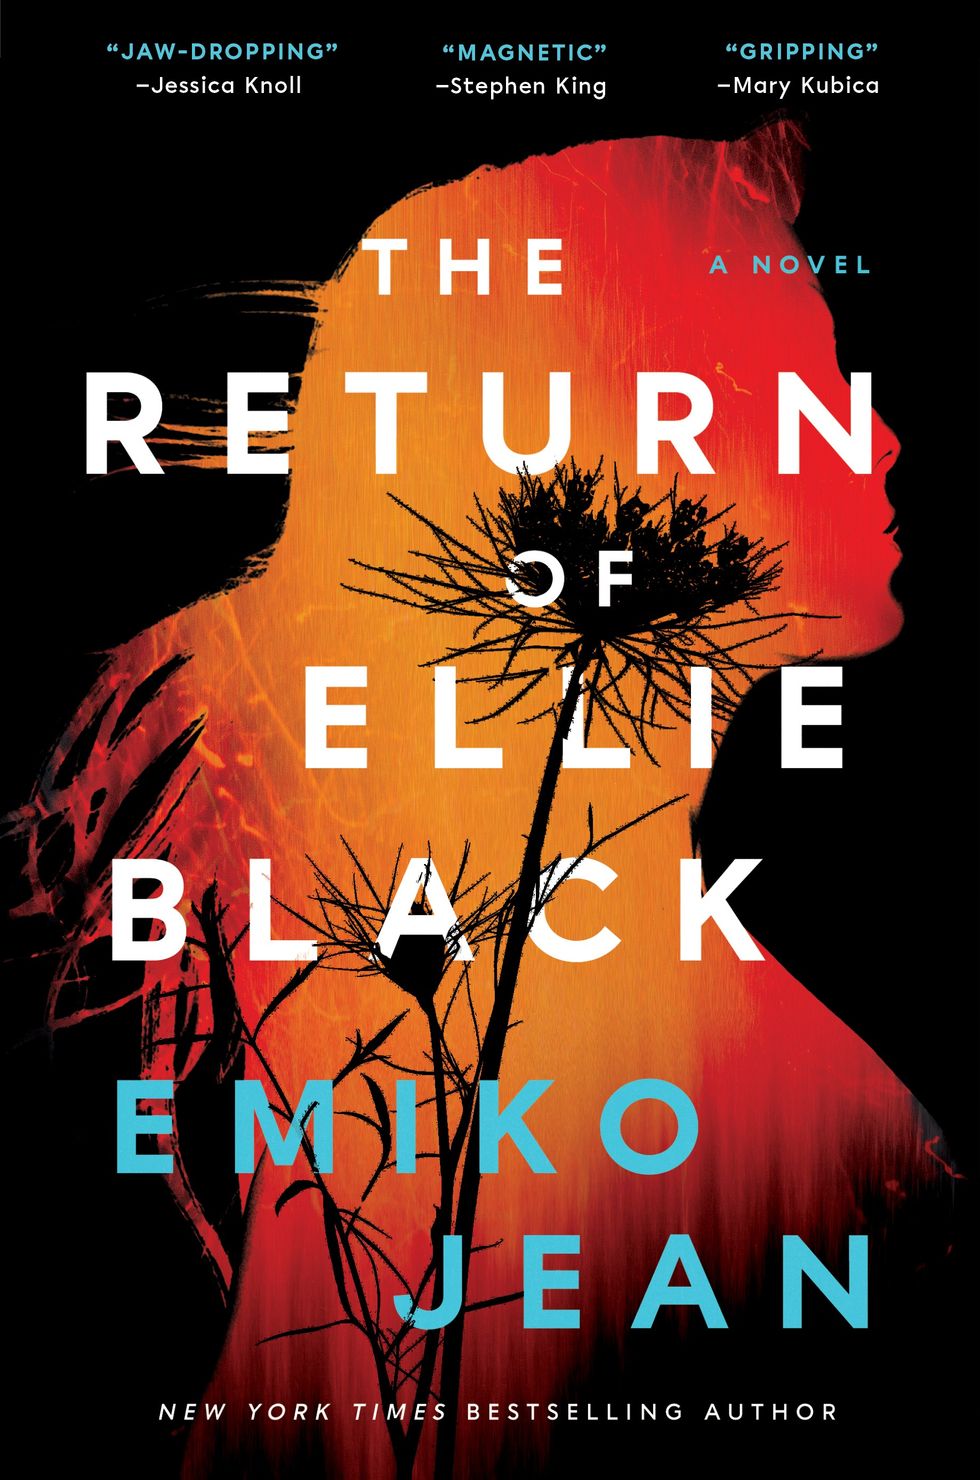 The Return of Ellie Black by Emiko Jean